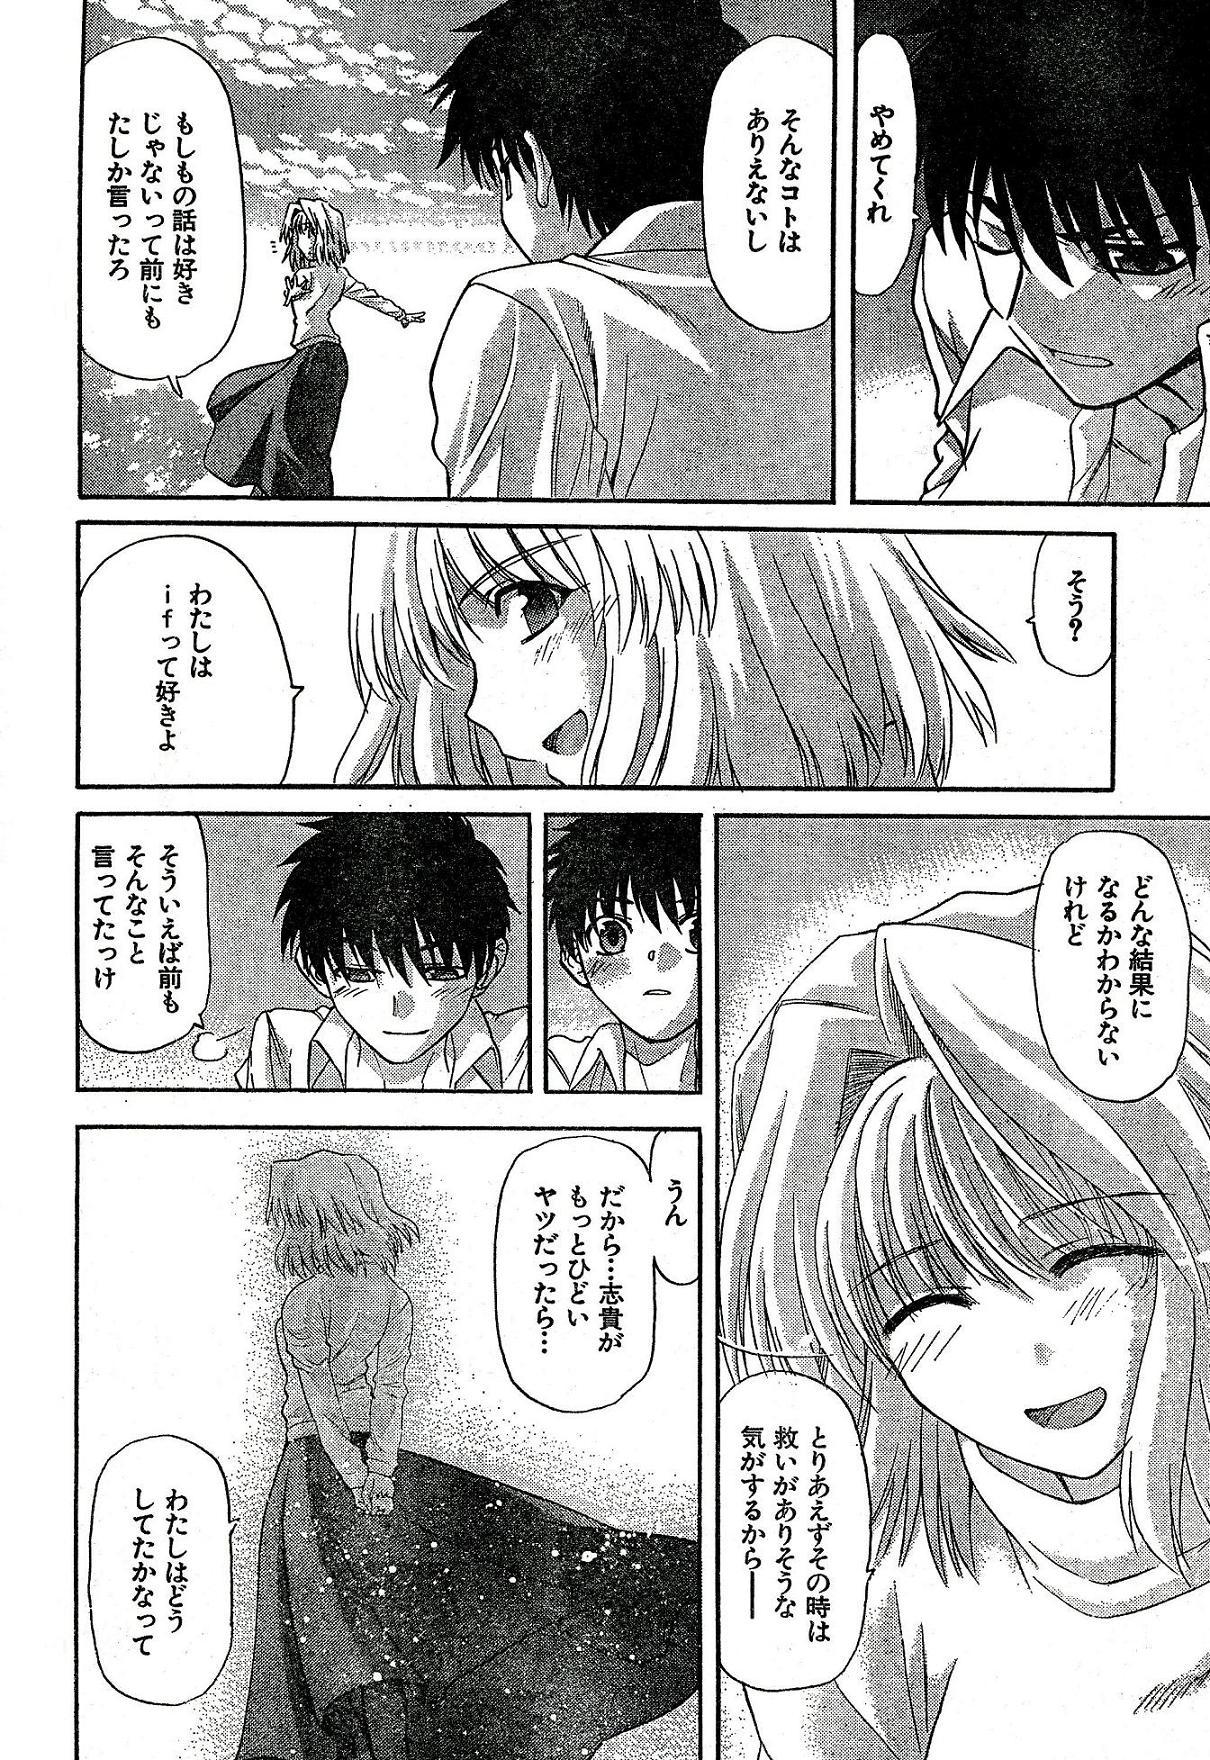 Atm Shingetsutan Tsukihime ch.59 - Tsukihime Closeups - Page 10